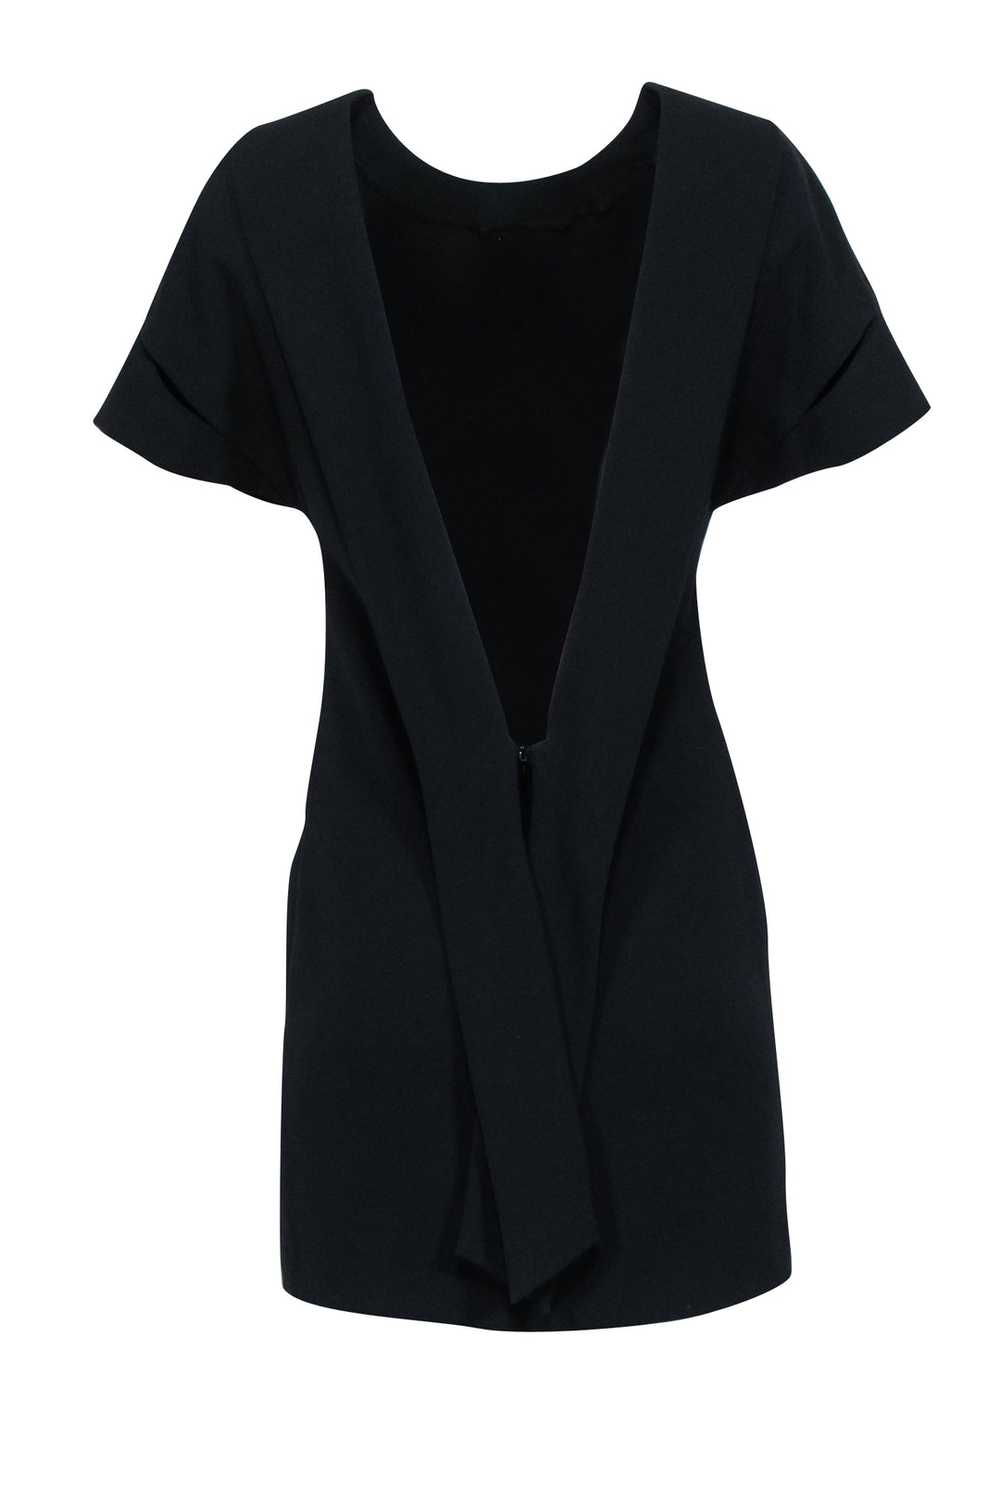 IRO - Black Short Sleeve Mini V-Back Dress Sz 4 - image 3